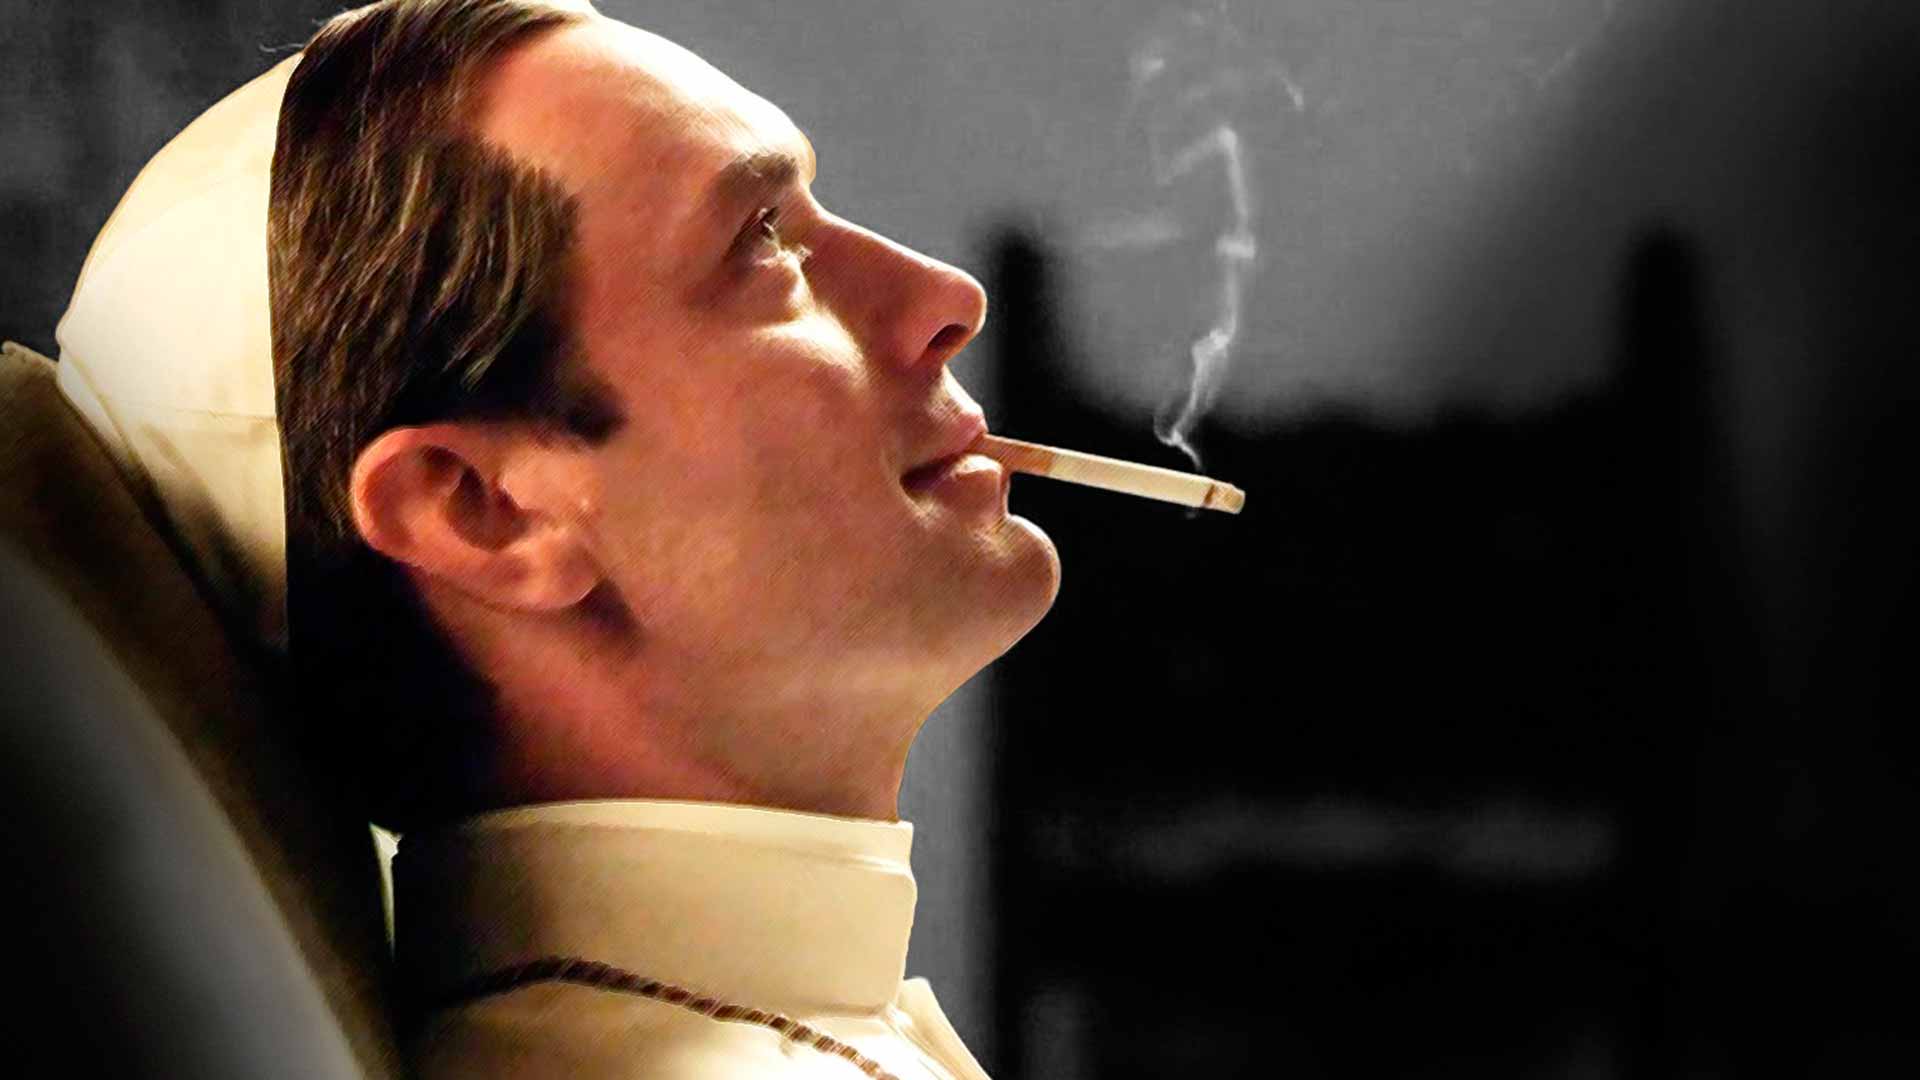 Молодой папа 4. Джуд Лоу молодой папа курит. Джуд Лоу с сигаретой. Джуд Лоу папа Римский.